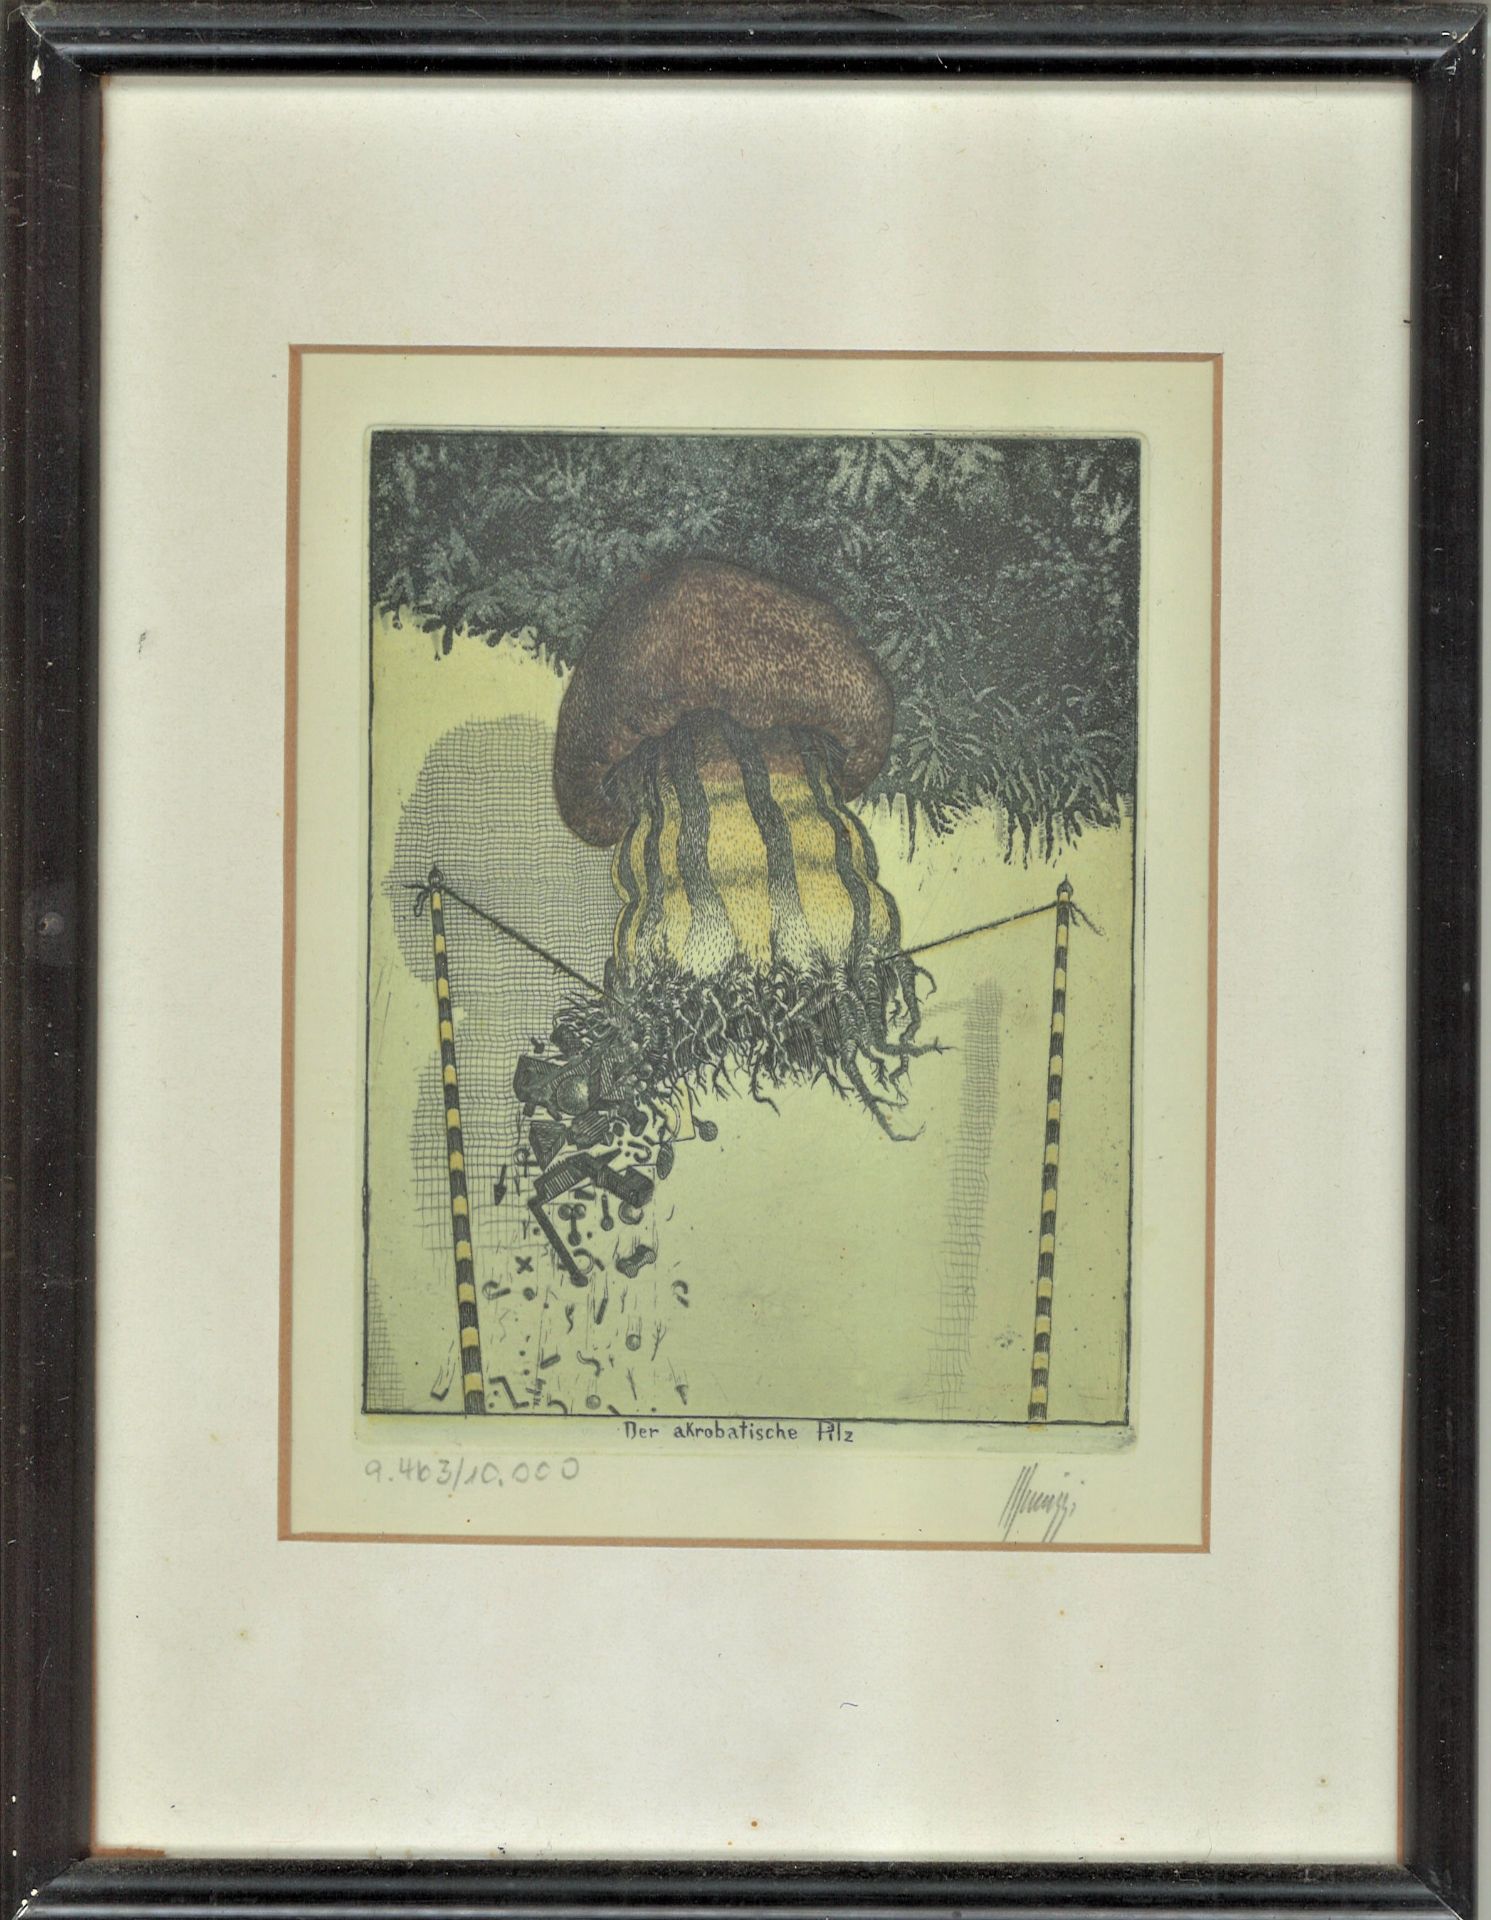 Maurilio Minuzzi (1939 - ), Farbradierung "Der aktrobatische Pilz", Nr. 9463/10000. Rechts unten